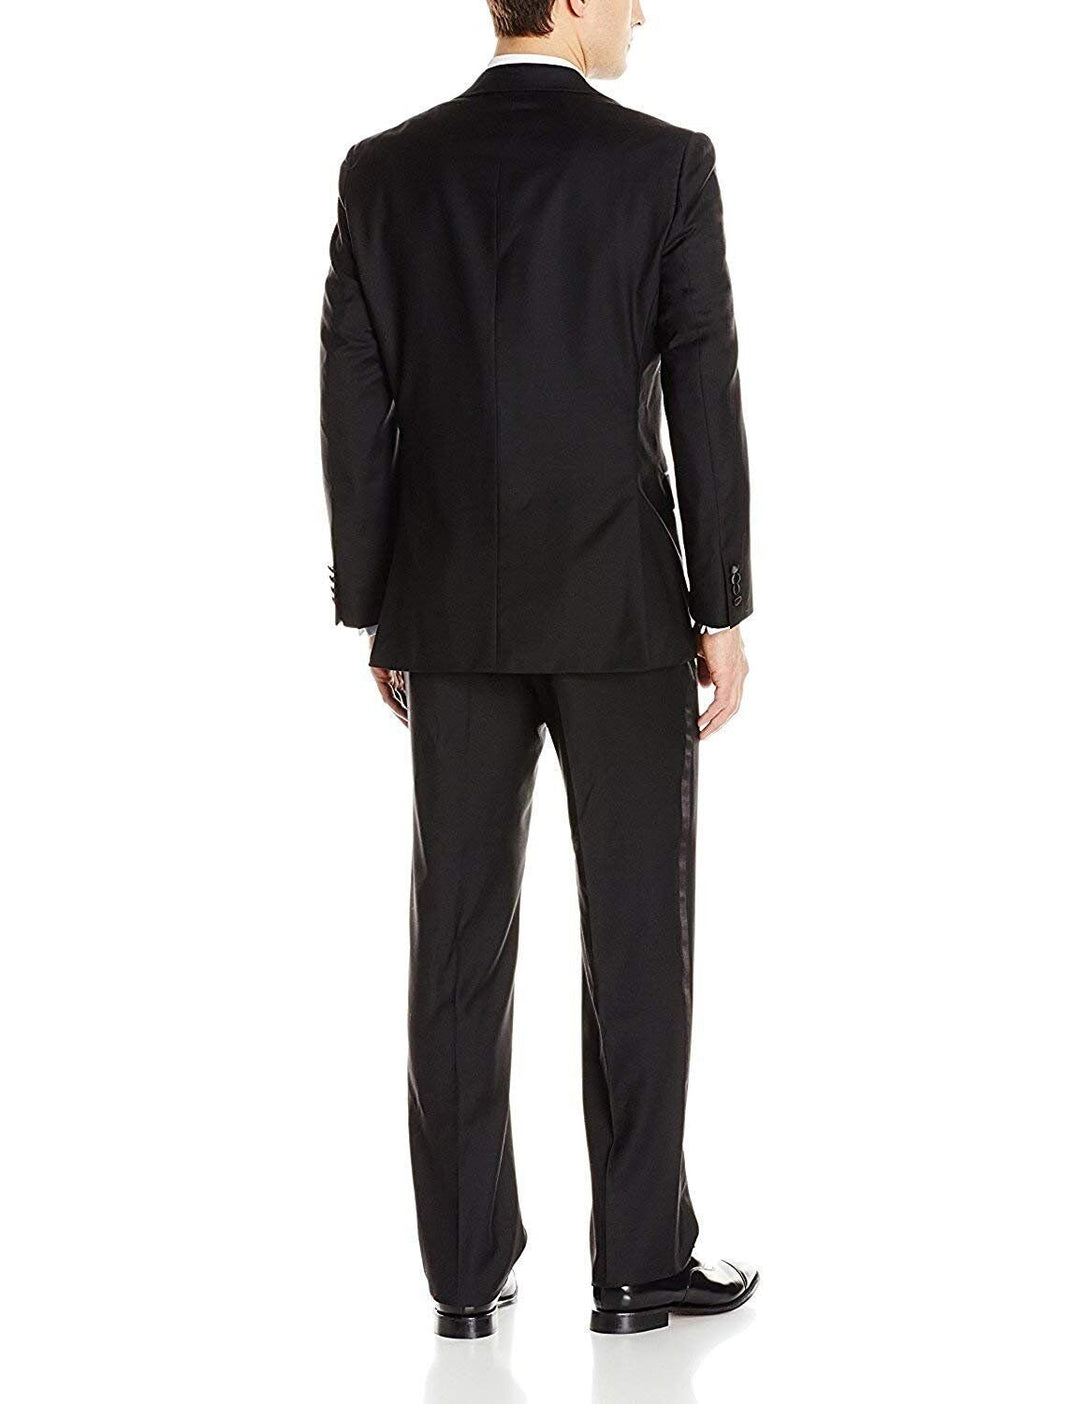 Adam Baker Men's Portly Fit 100% Wool Notch Lapel Two-Piece Formal Tuxedo Set